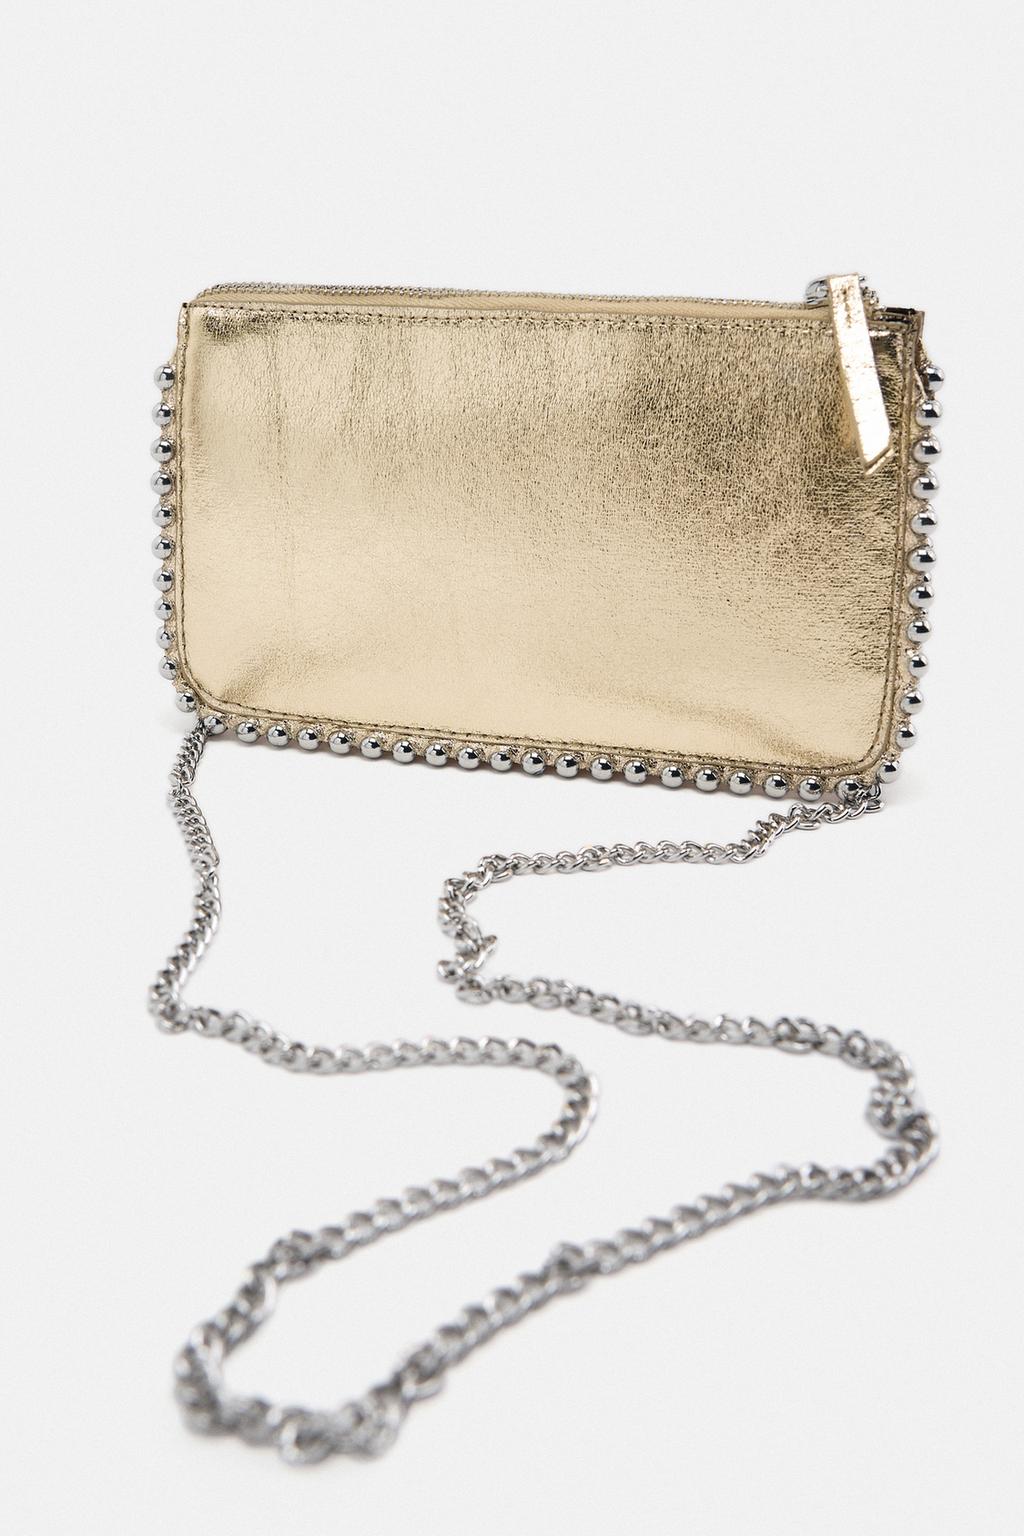 Сумка Zara Clutch With Studs, золотой застежка лобстер серебристого цвета 10 шт